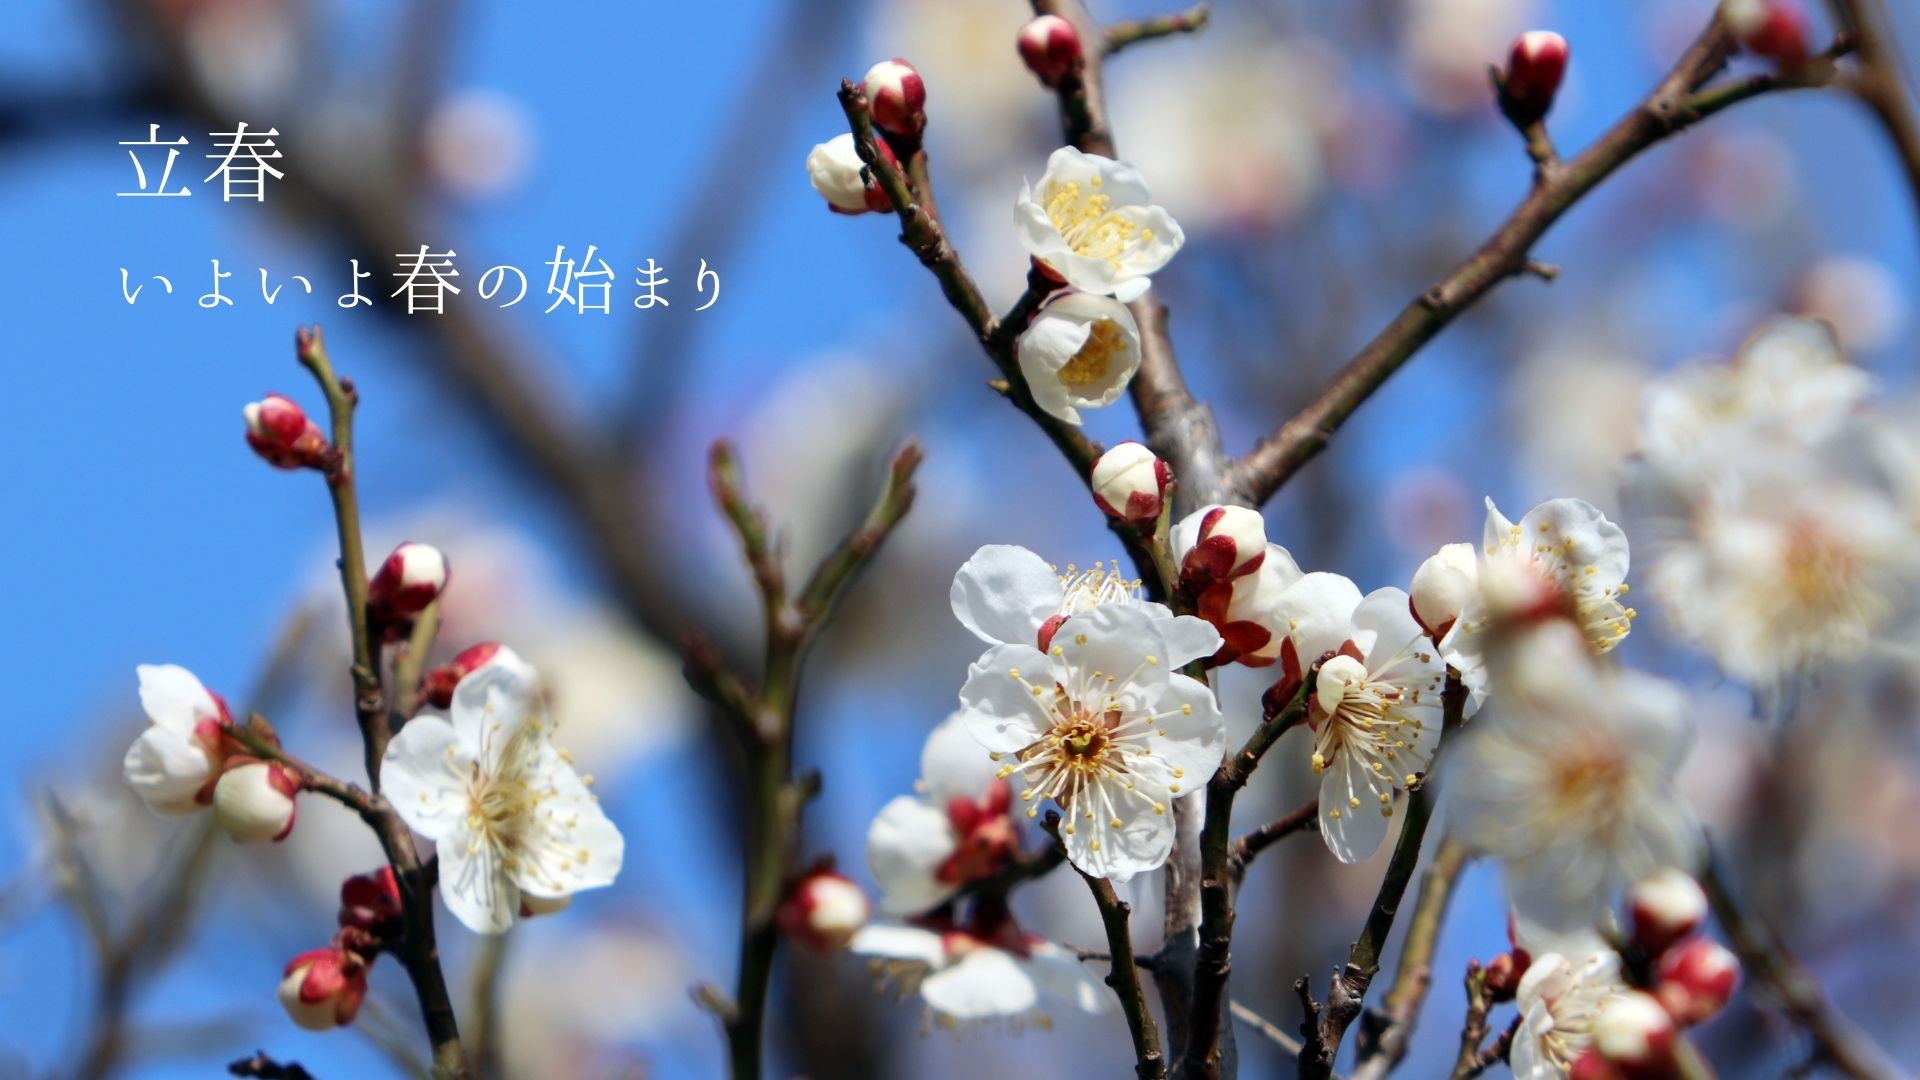 暦のうえでは春の始まり「立春」。梅の開花に心おどる